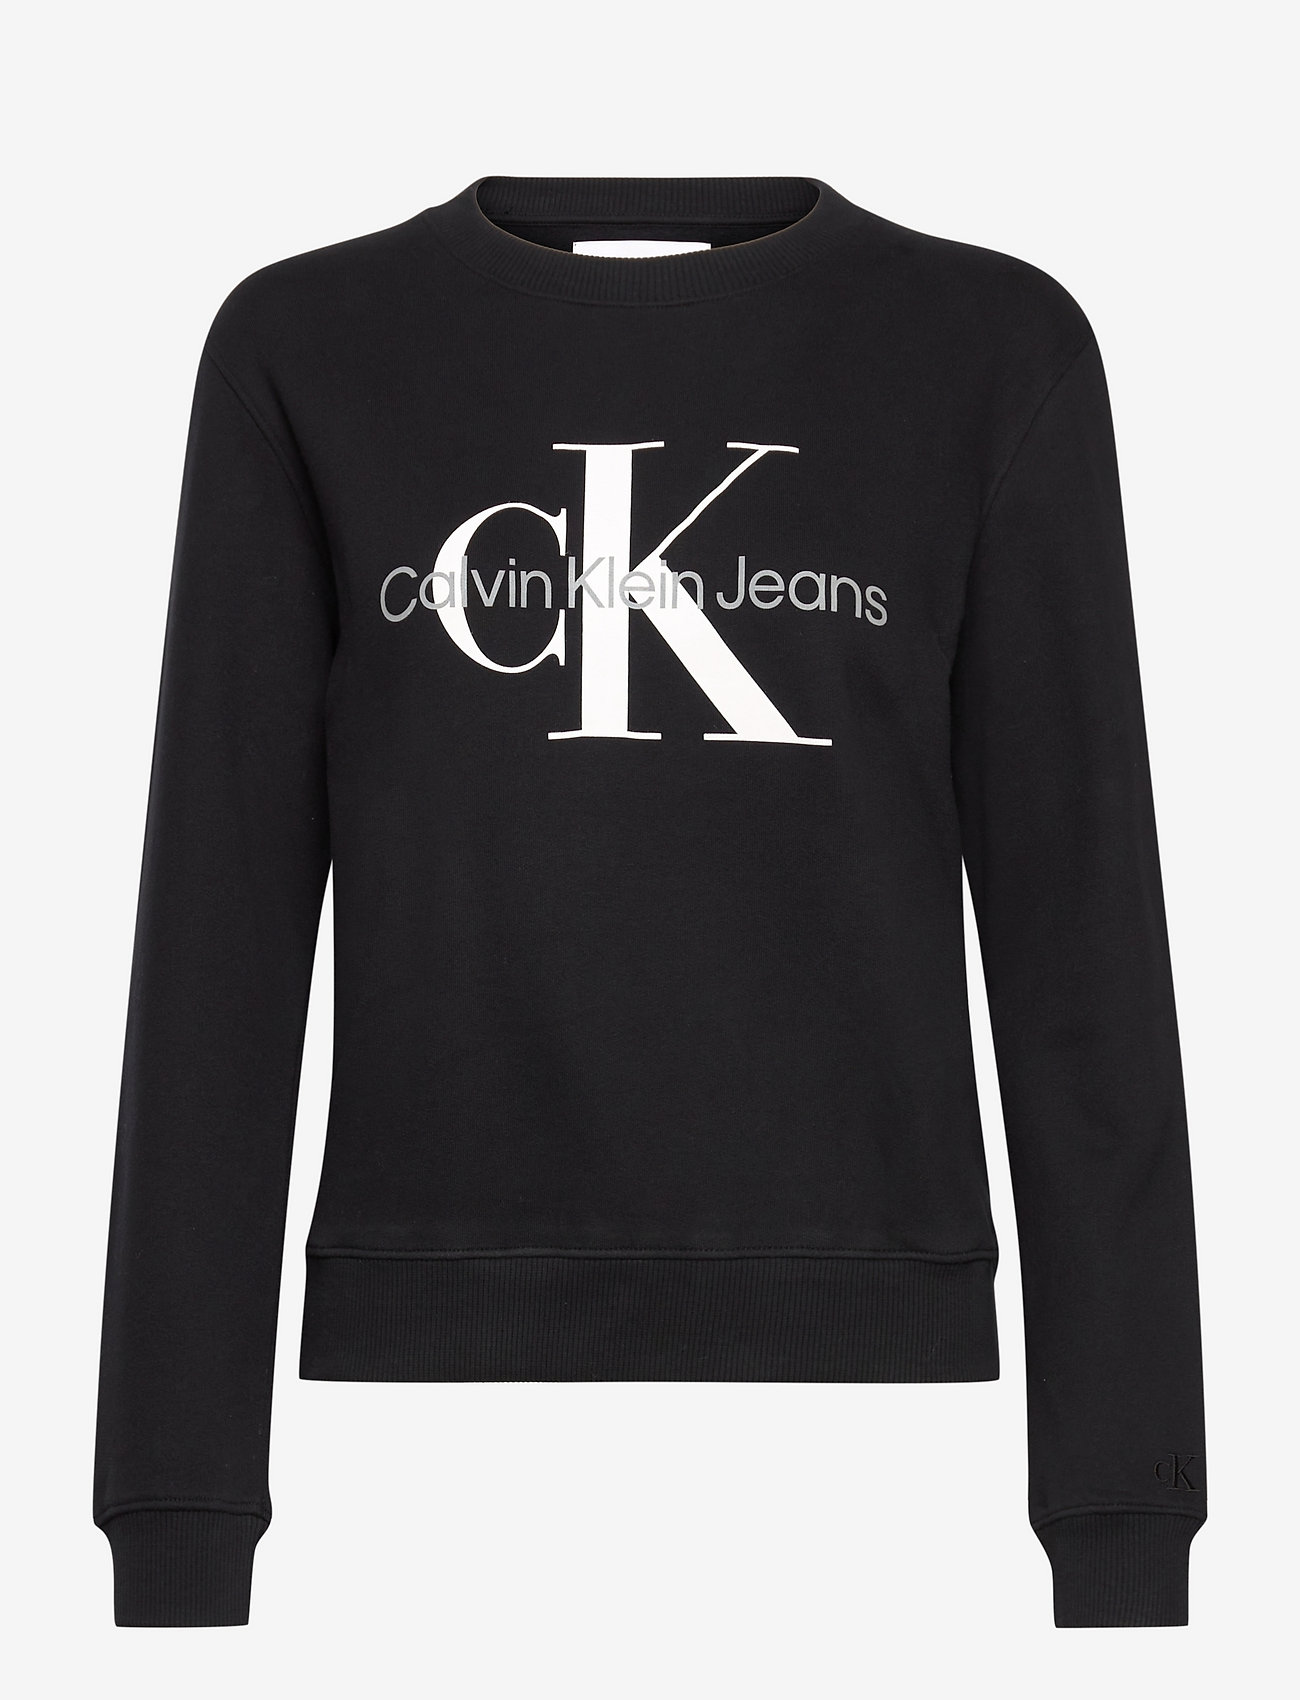 bovenstaand projector Induceren Calvin Klein Jeans Core Monogram Sweatshirt - Sweatshirts | Boozt.com